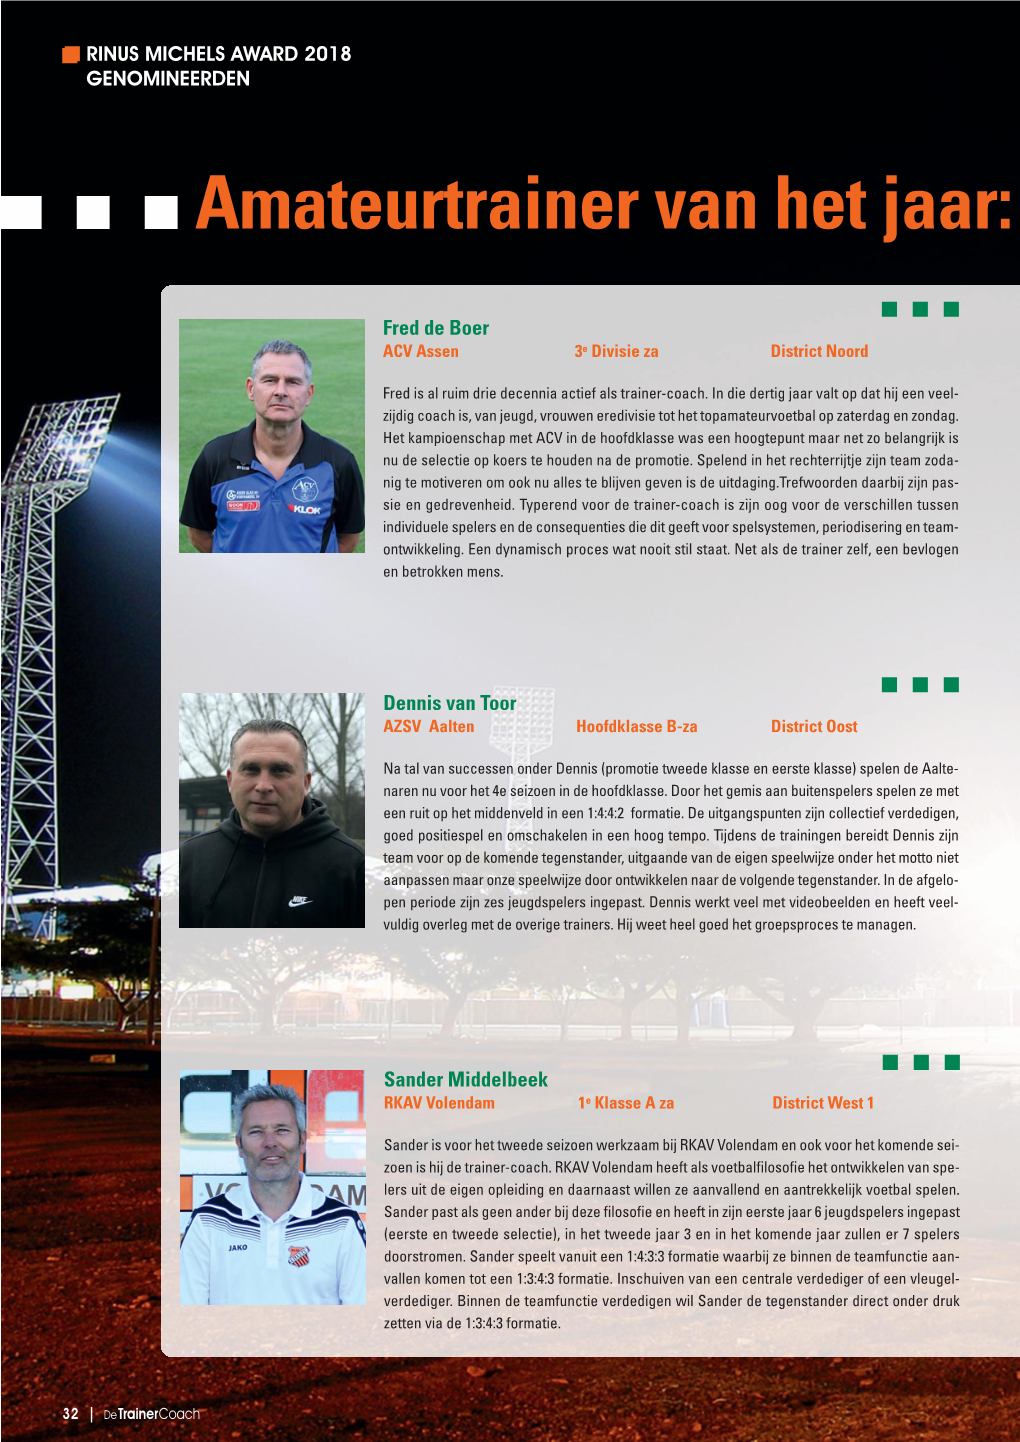 Amateurtrainer Van Het Jaar